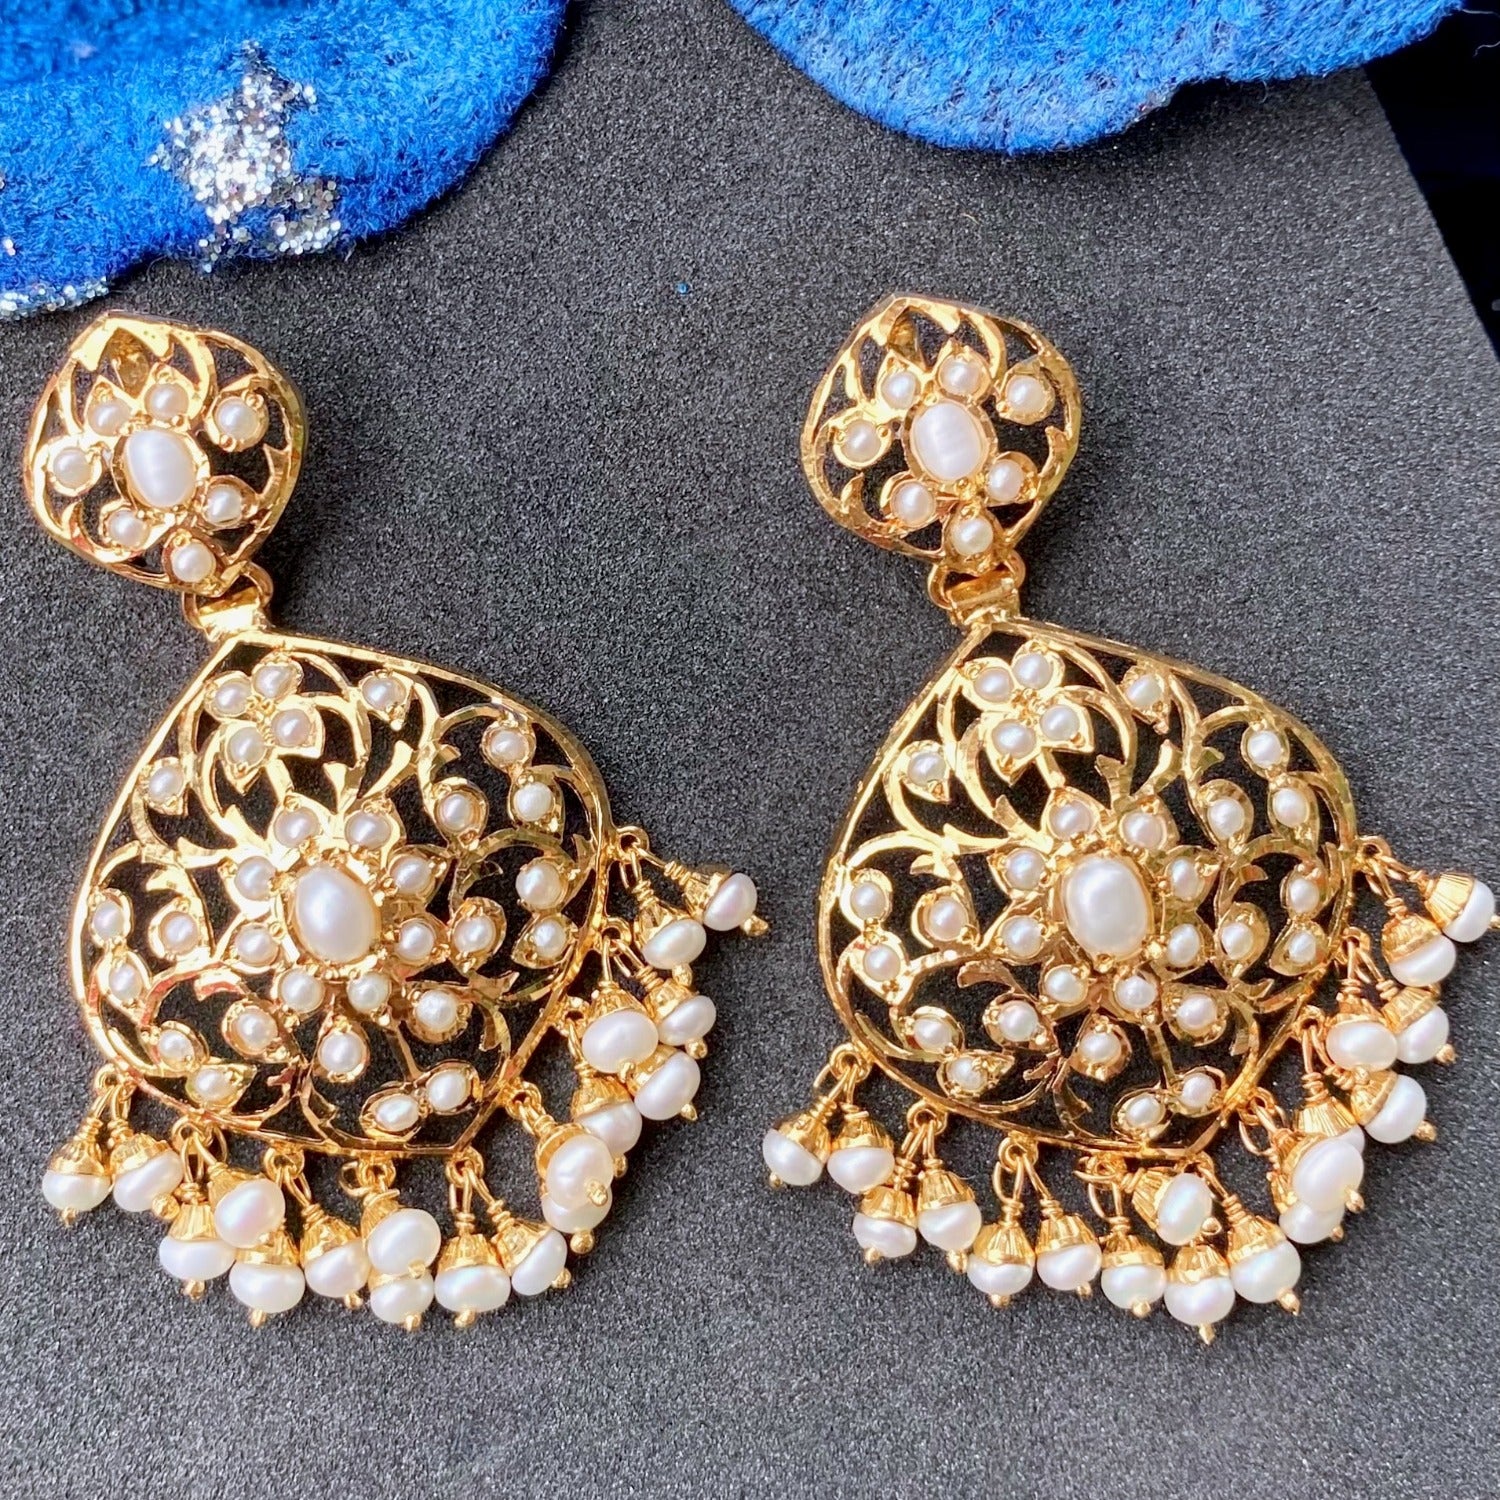 Pearl earrings in gold